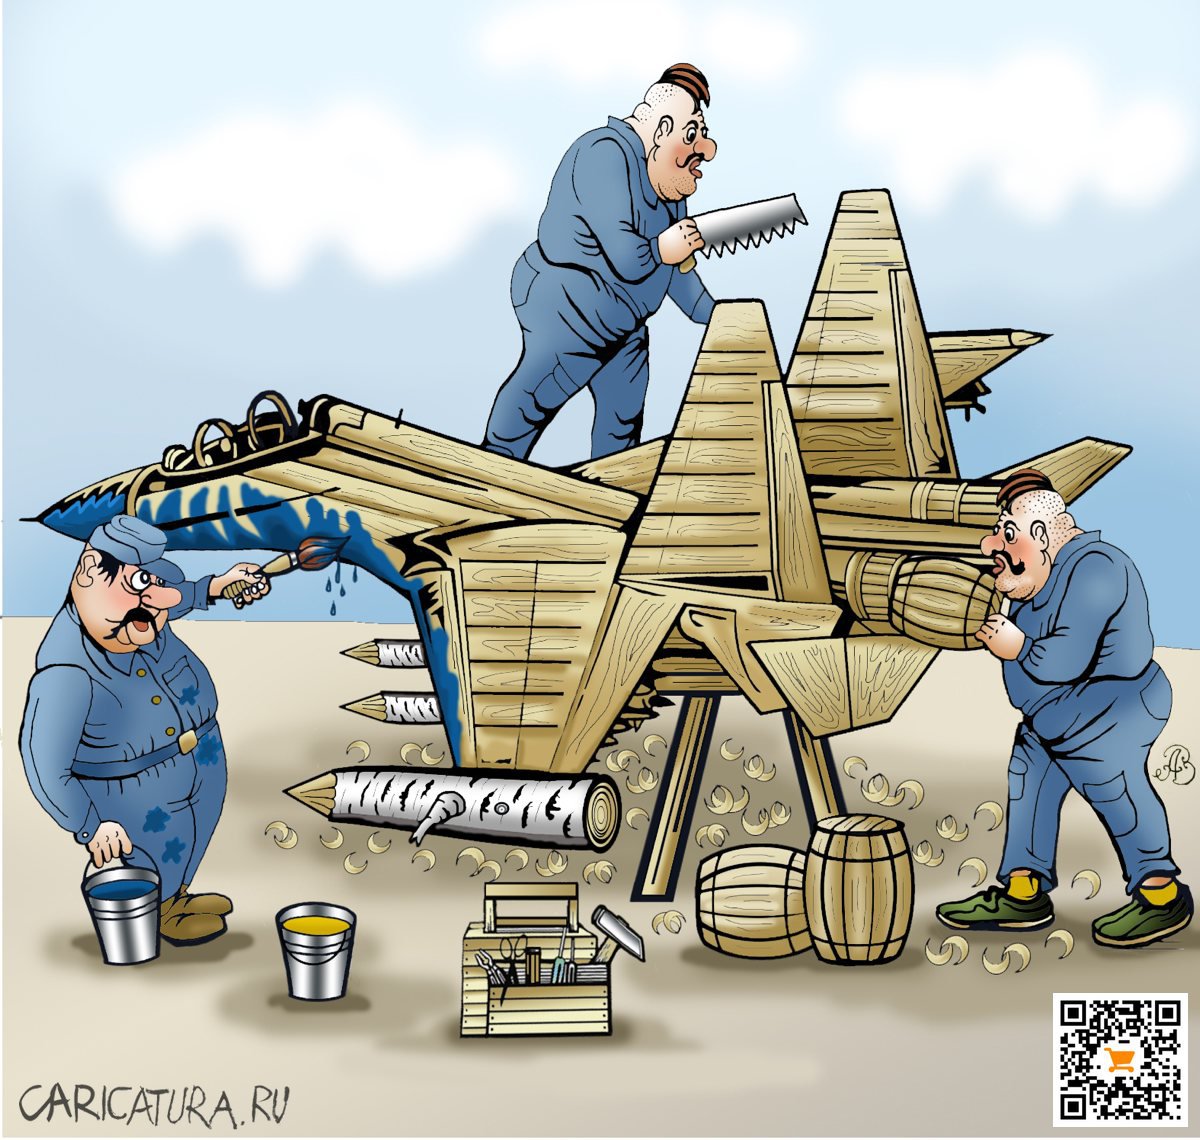 Карикатура "Про самолётостроение", Андрей Ребров